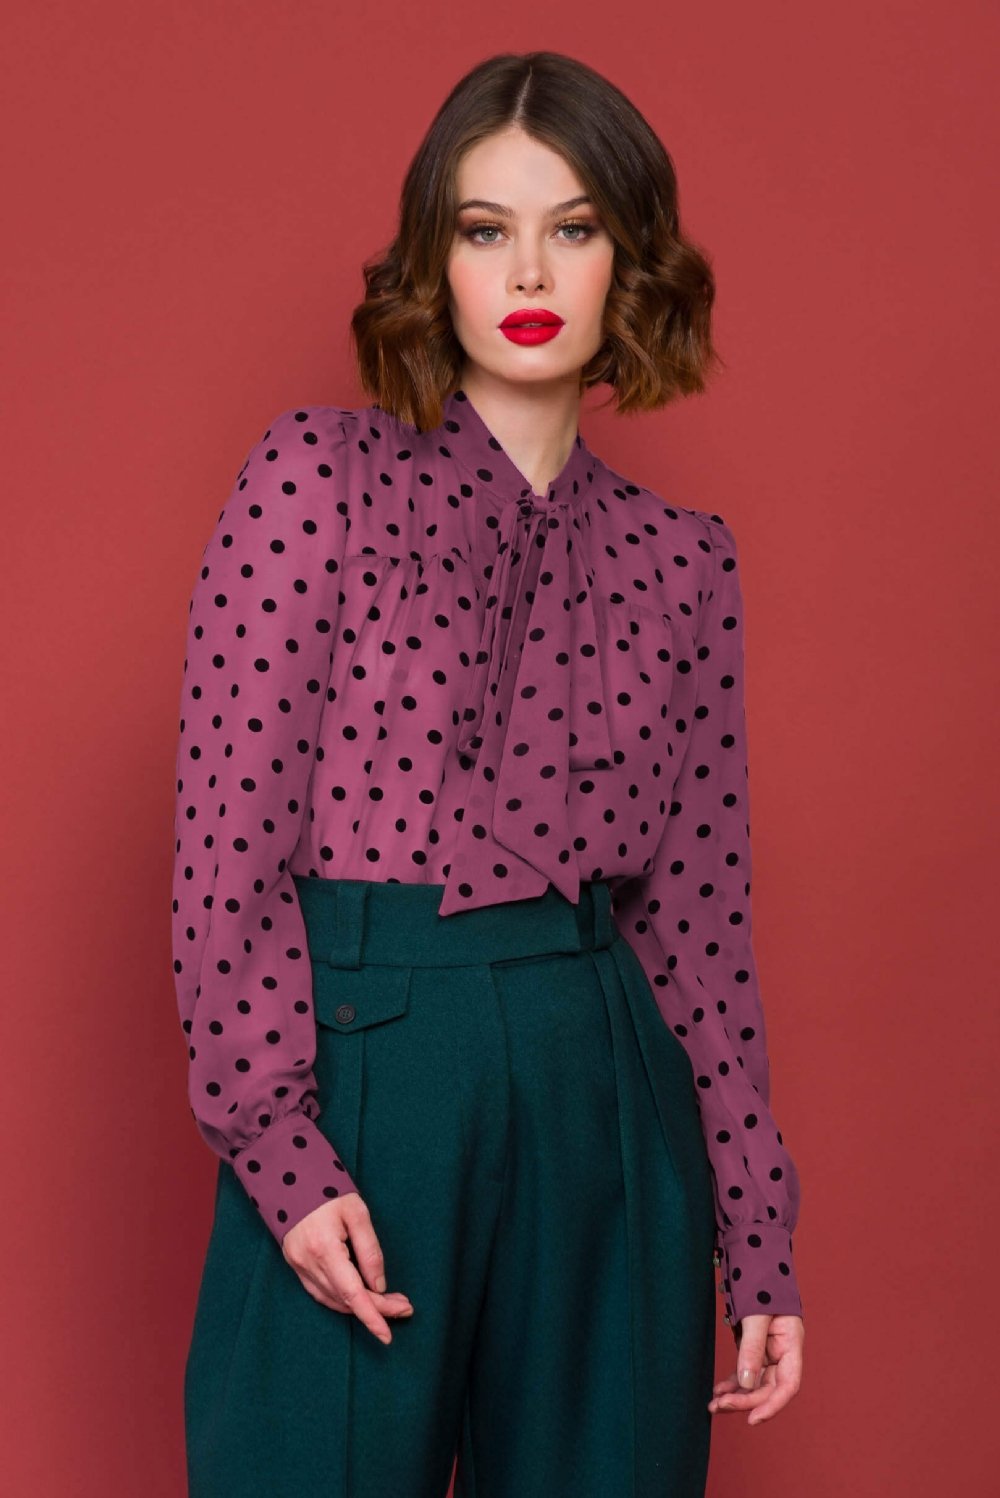 Mulher 2 peças define botão sólido blusas camisas polka dot calças